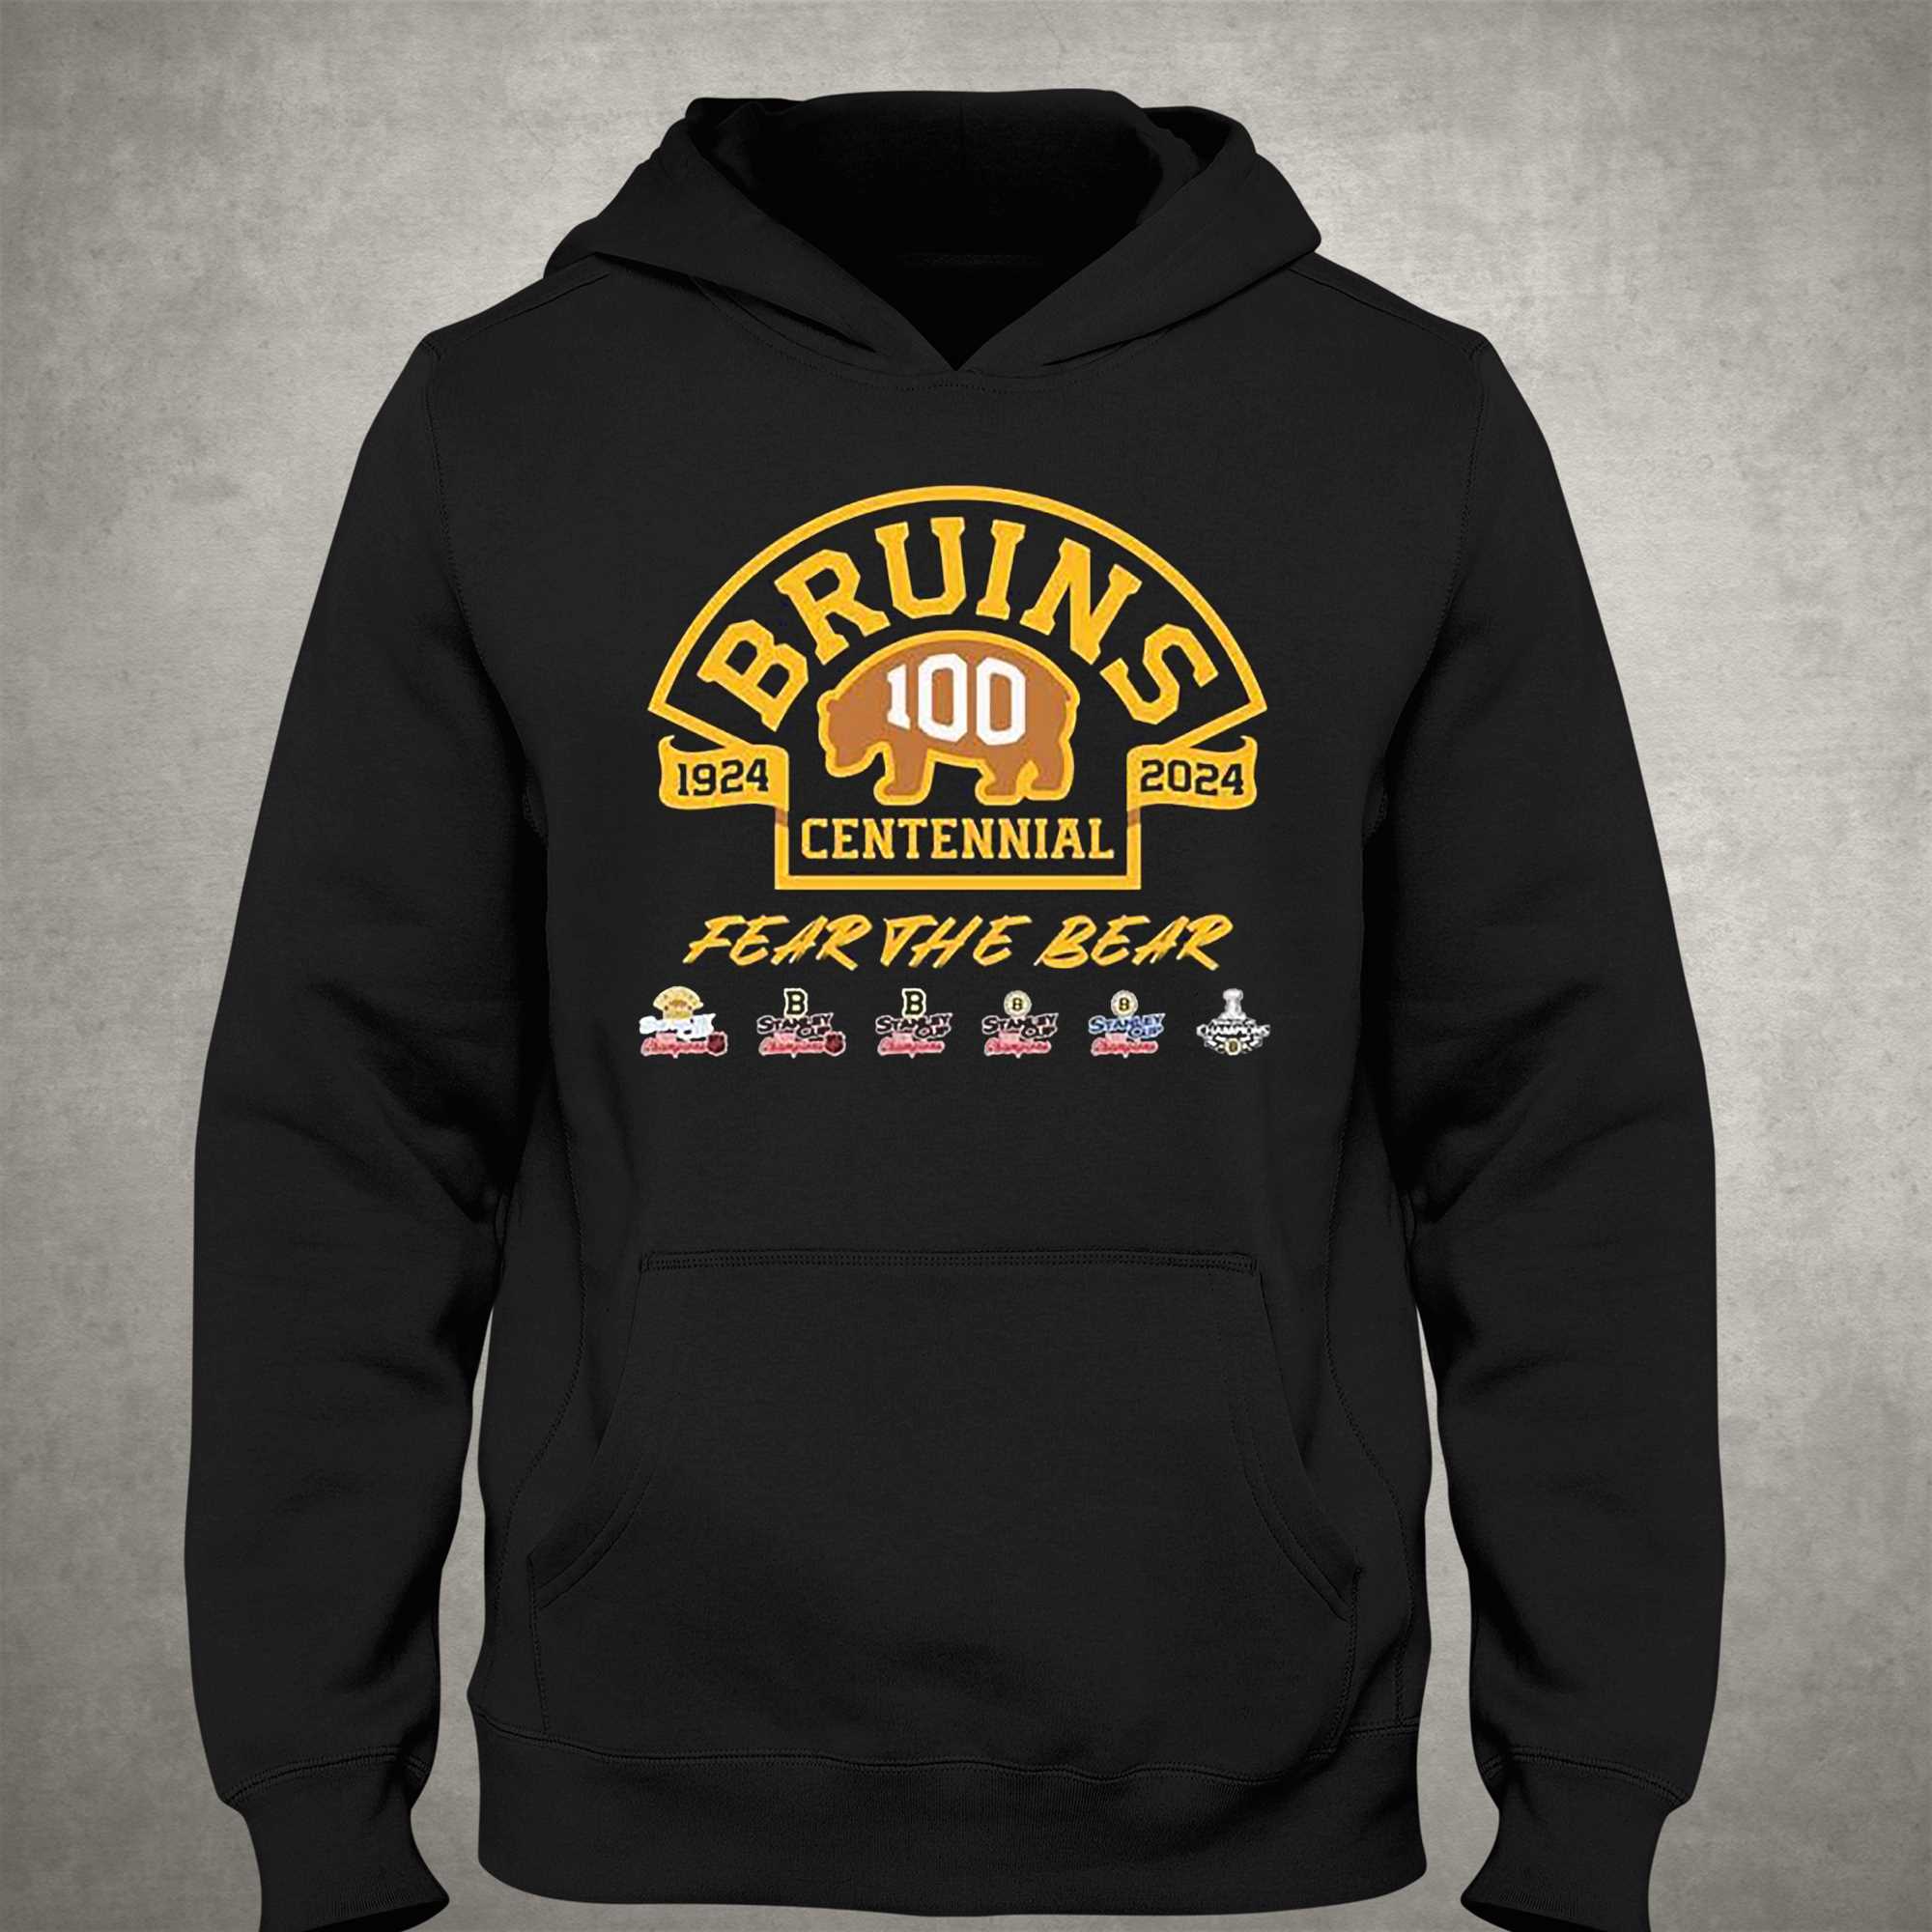 Boston Bruins Gear, Bruins 100th Anniversary Jerseys, Boston Bruins Hats,  Bruins Apparel